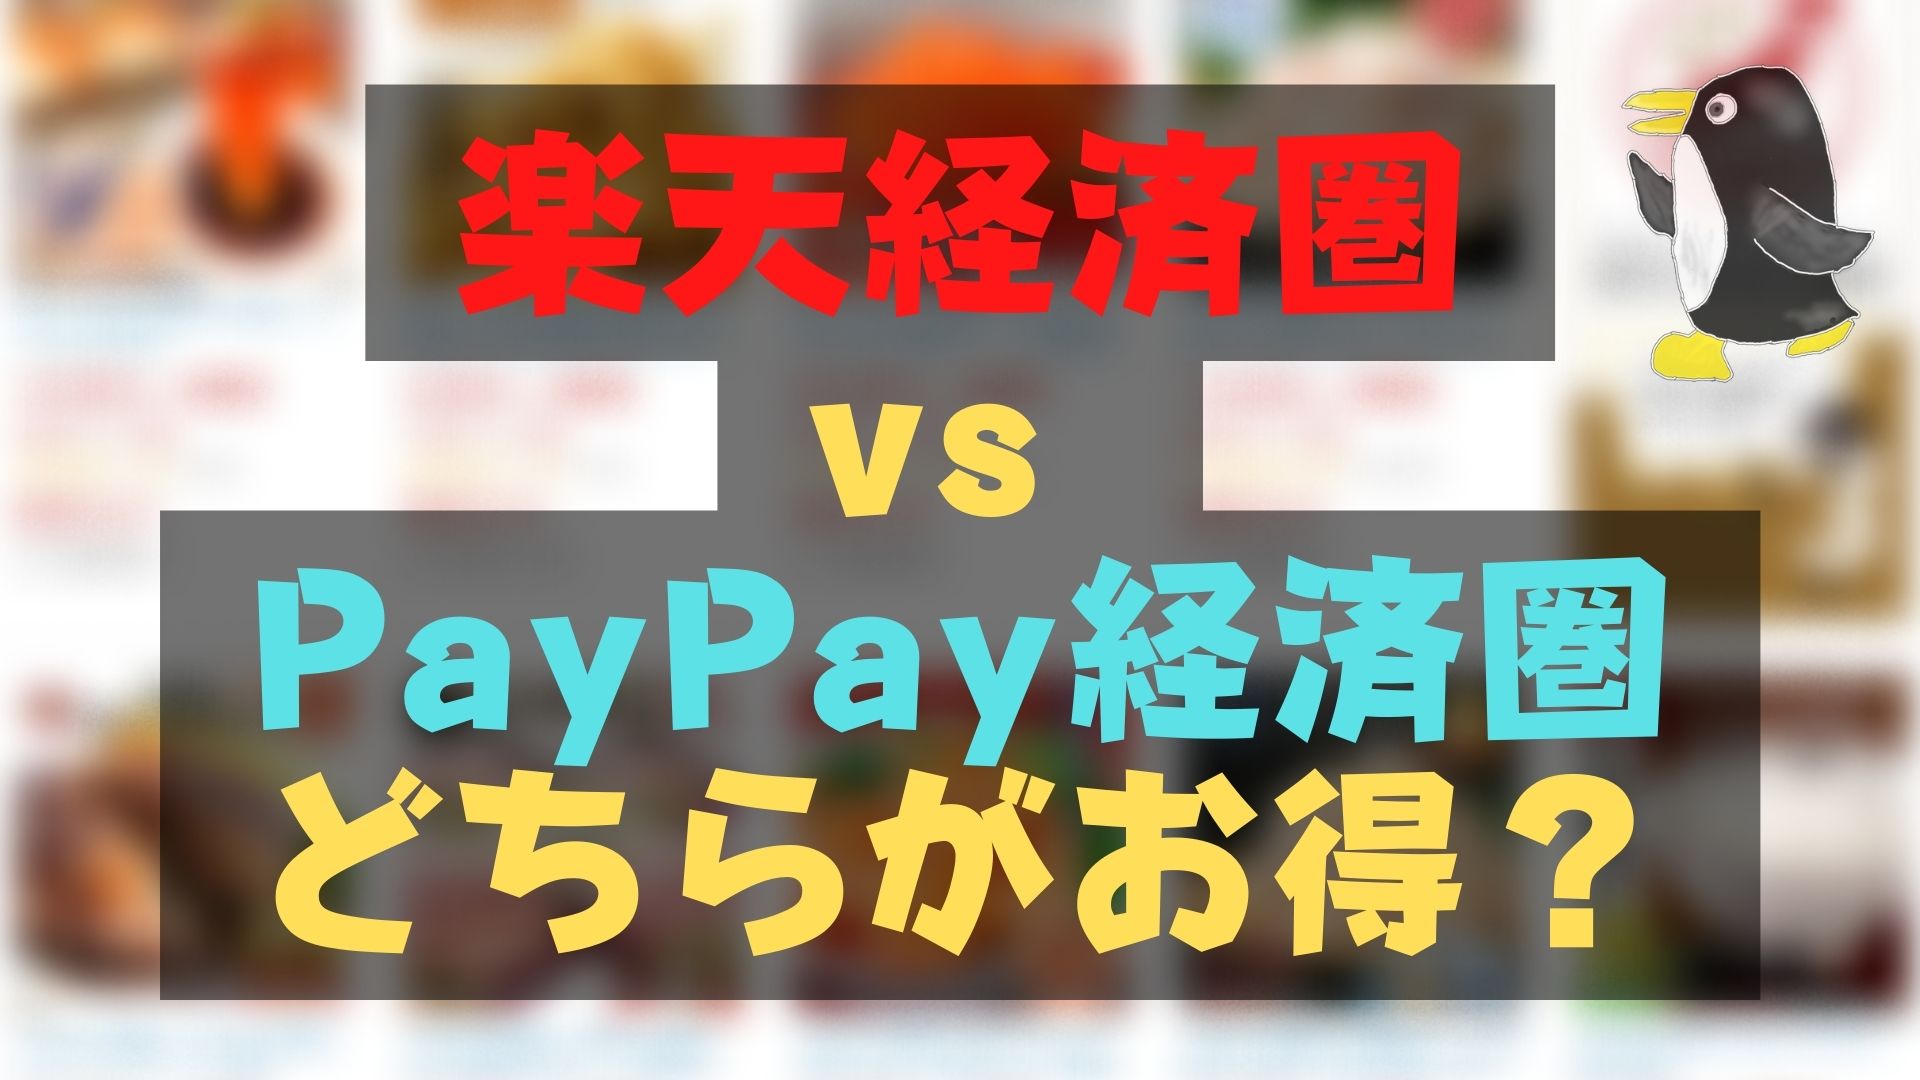 楽天経済圏vs PayPay経済圏